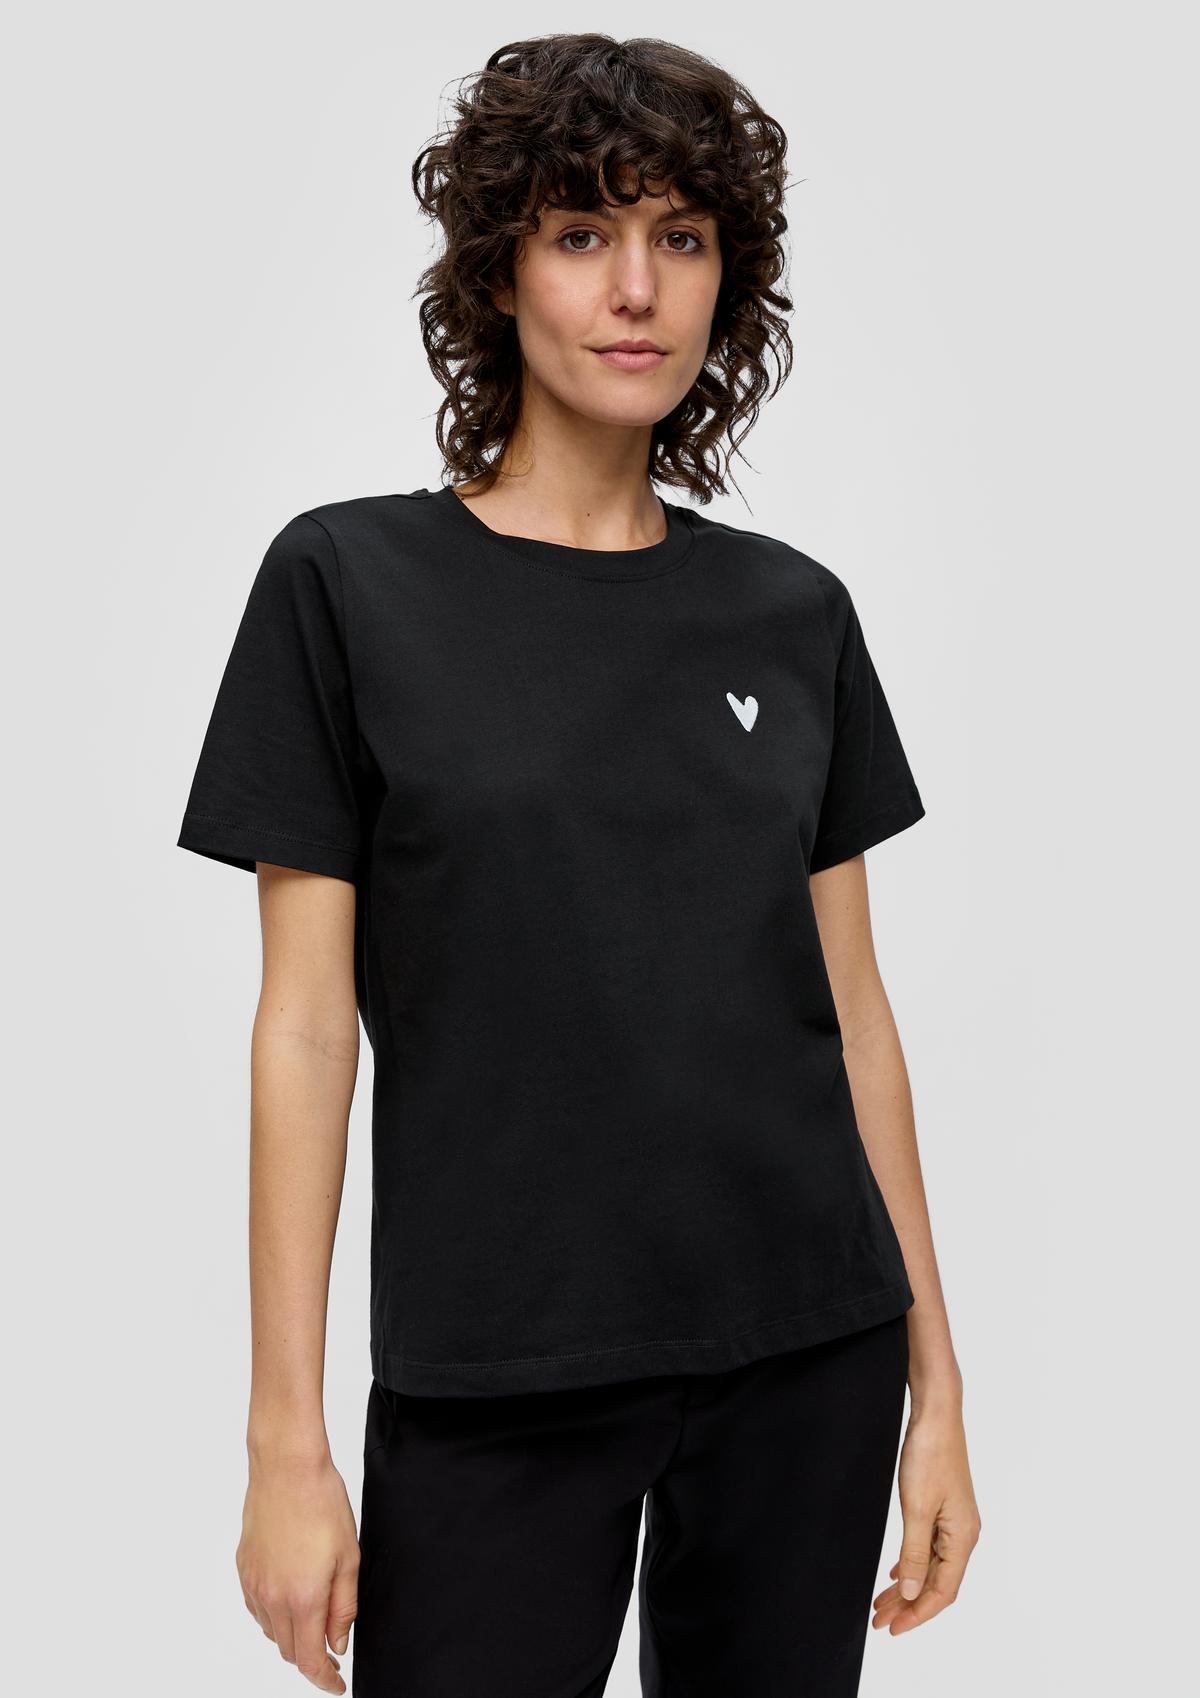 Damen für und kaufen Tops Shirts online